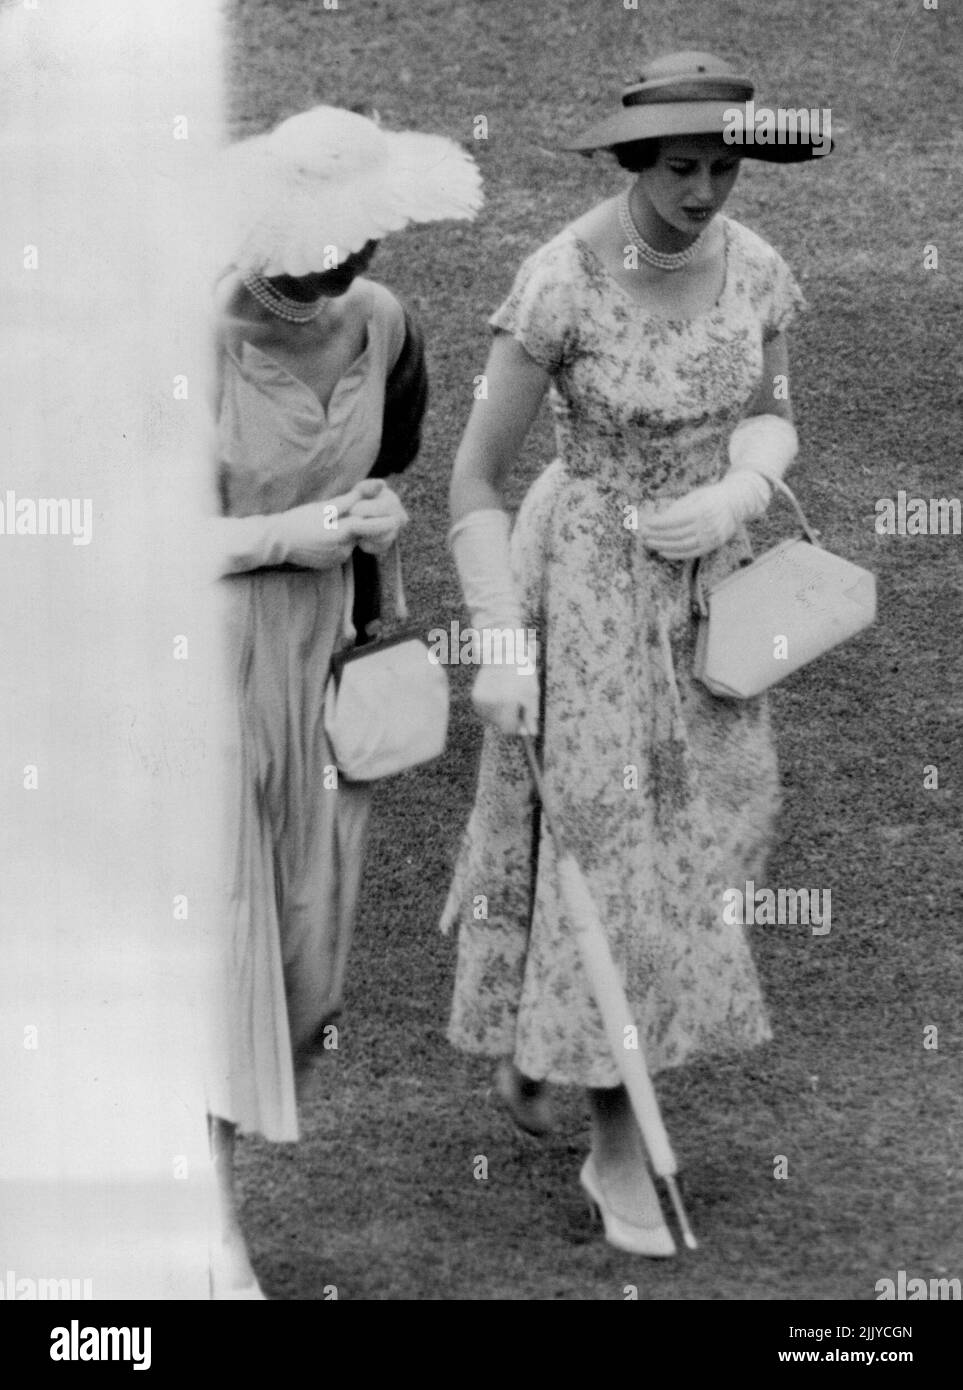 La princesse Alexandra porte une grenouille fleurie et porte un sac à main blanc et un parapluie soigneusement roulé assorti dans un jardin ***** donné par la ***** À Buckingham ***** Palais. 22 juillet 1954. Banque D'Images